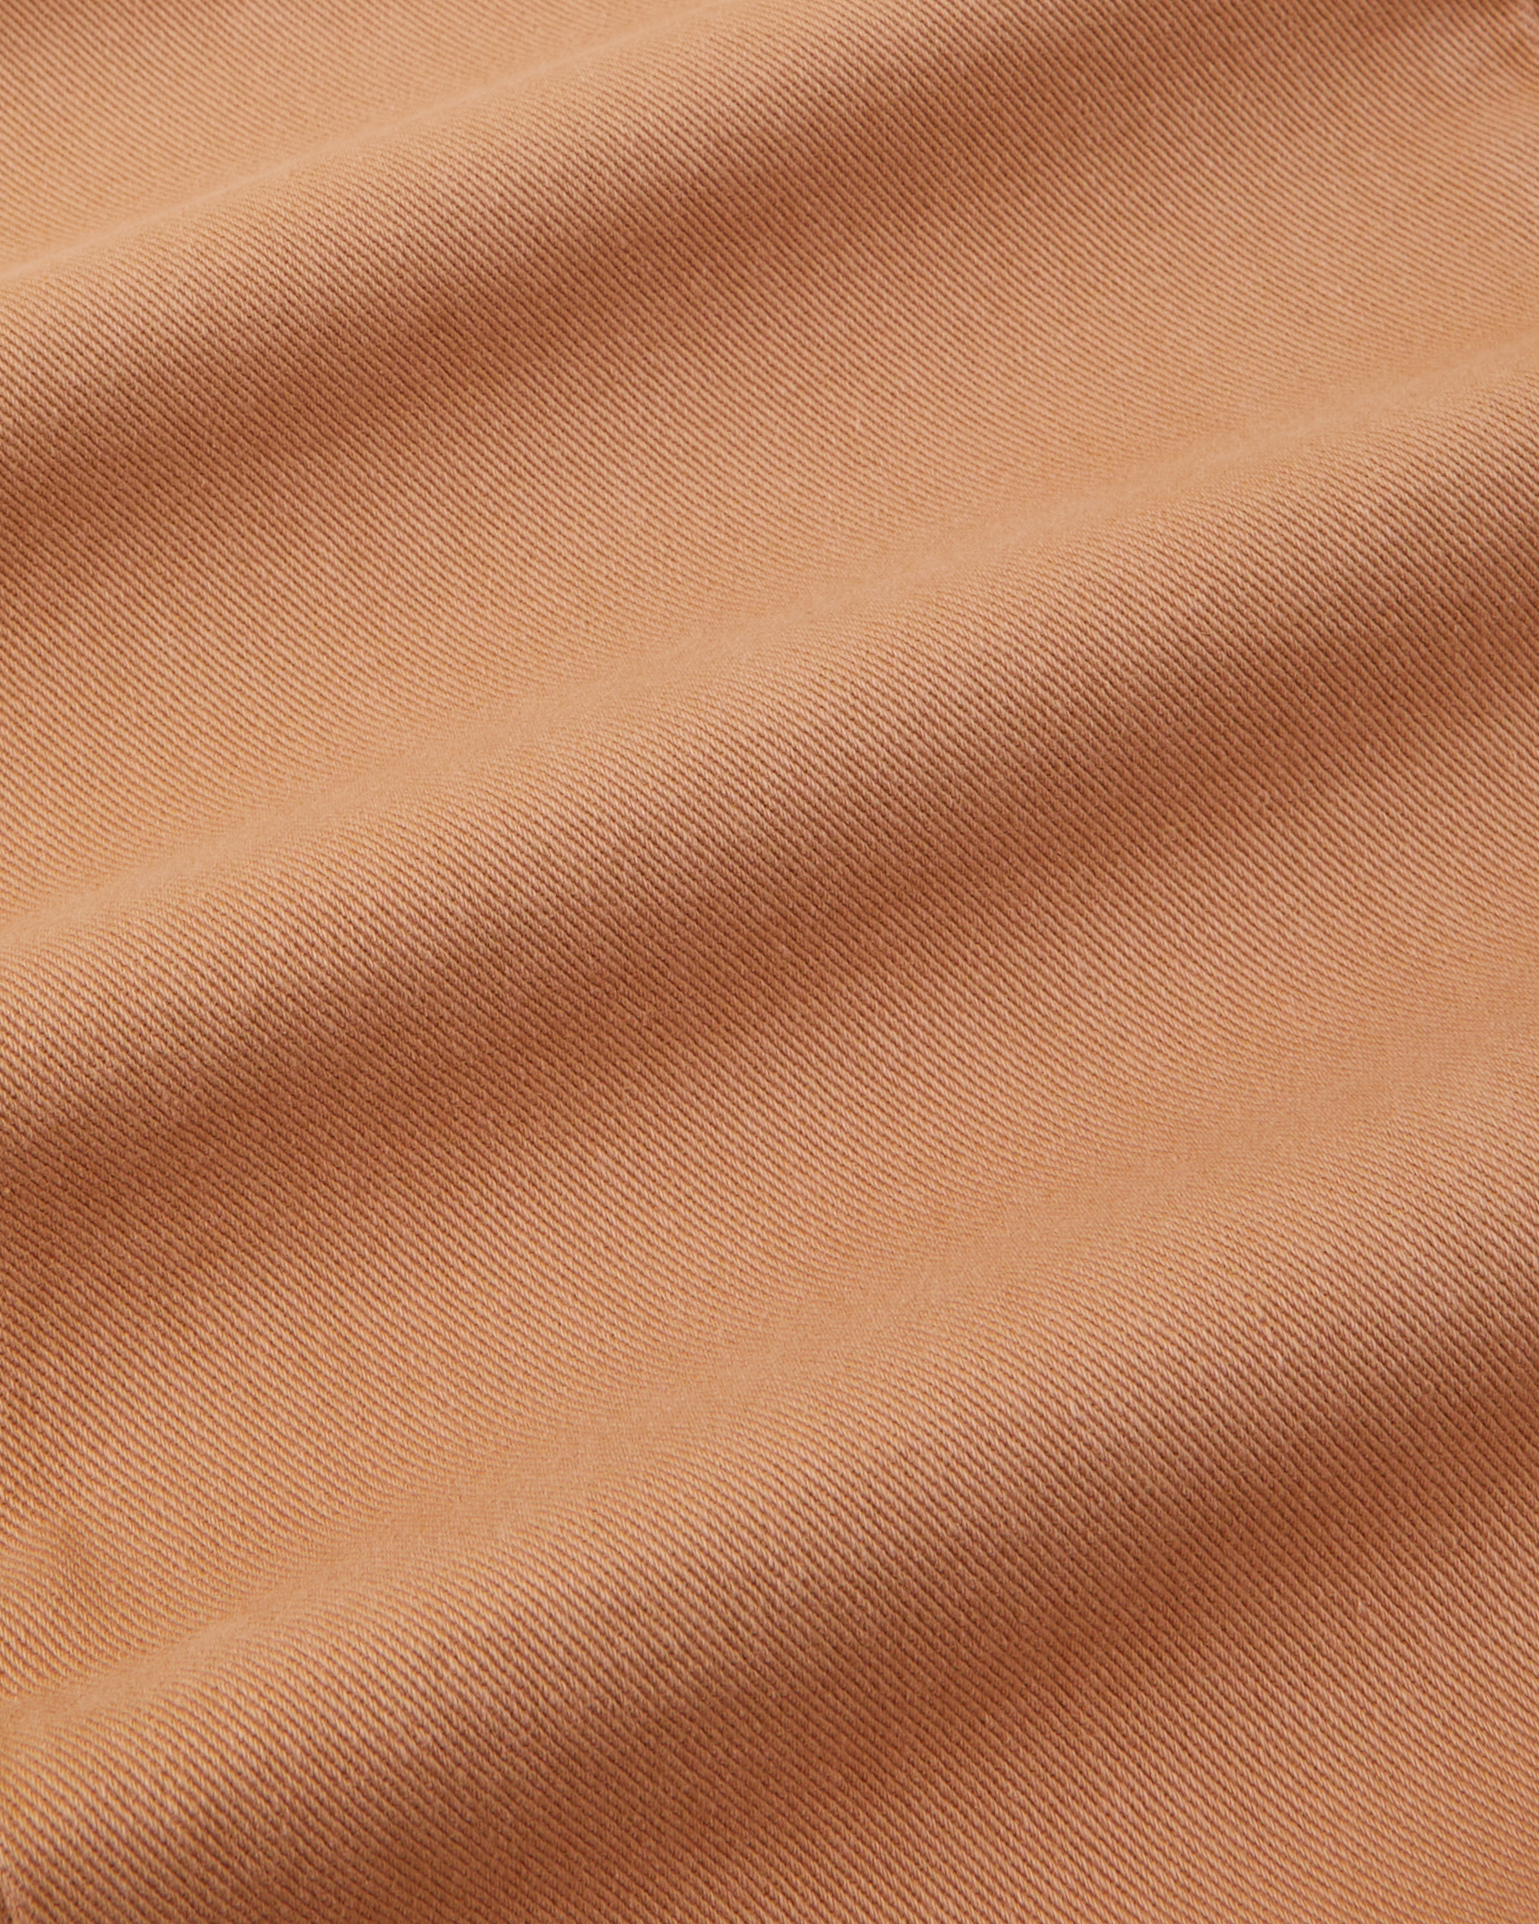 Work Pants in tan fabric detail